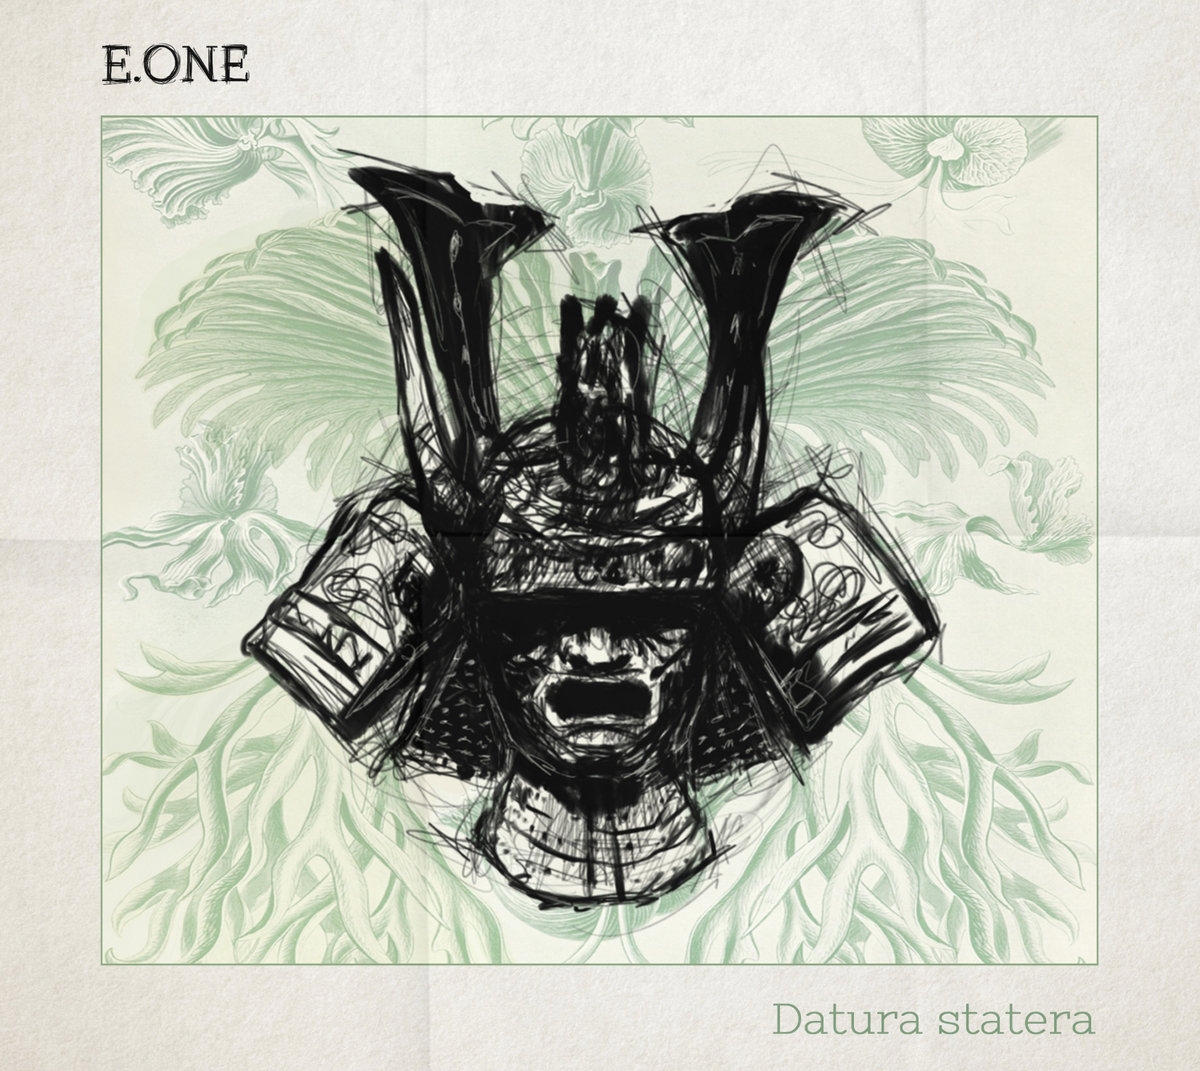 Album Cd "E.One - Datura statera" de skalpel sur Scredboutique.com